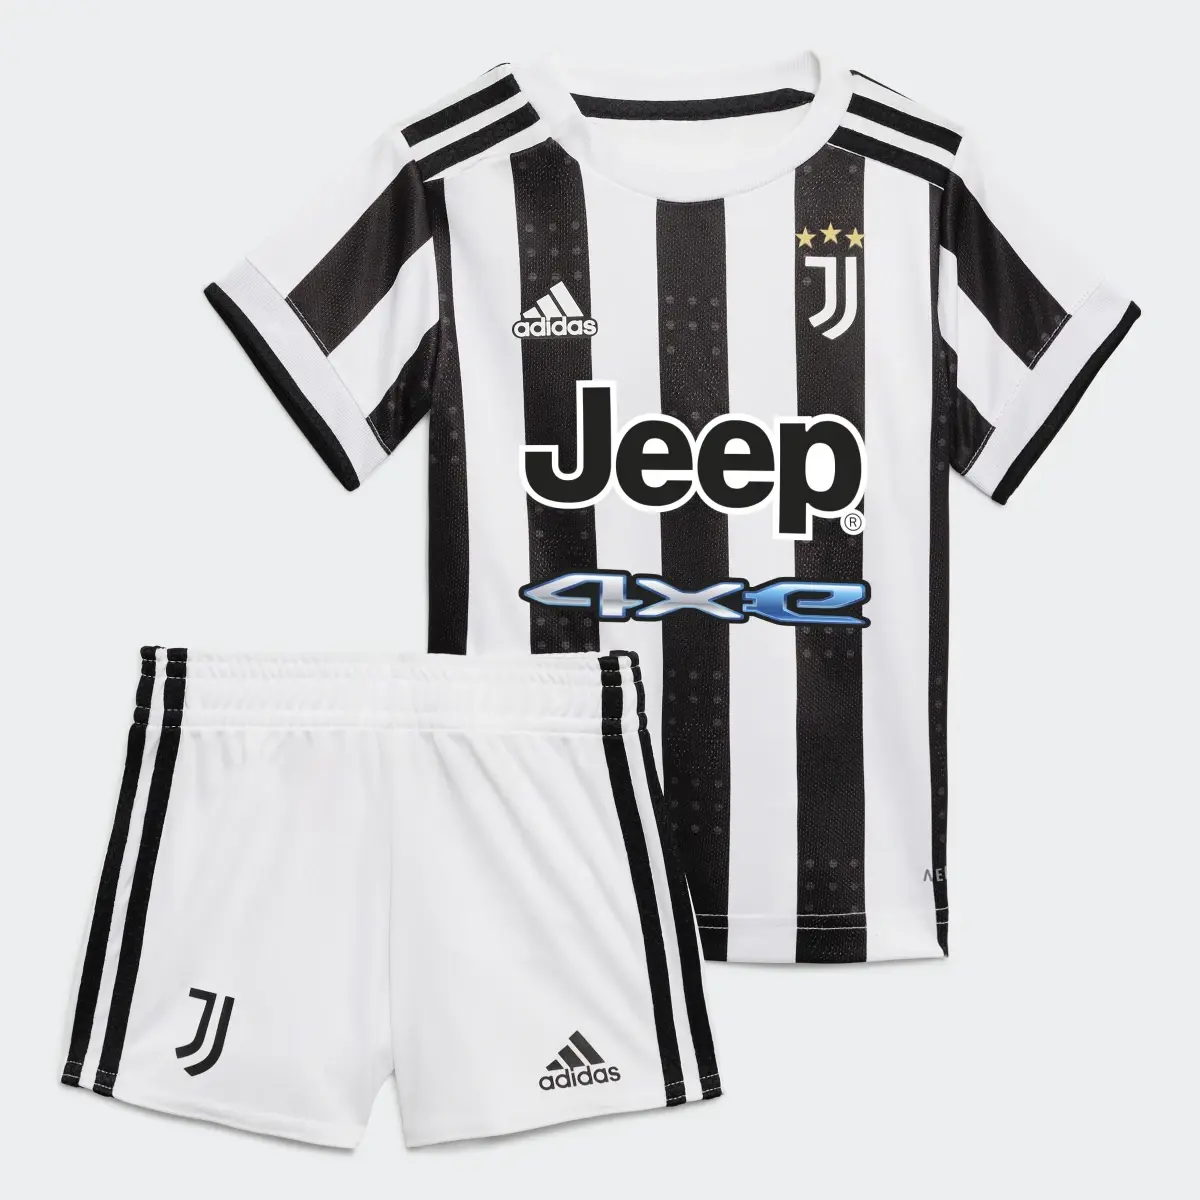 Adidas Juventus 21/22 Home Baby Kit. 1